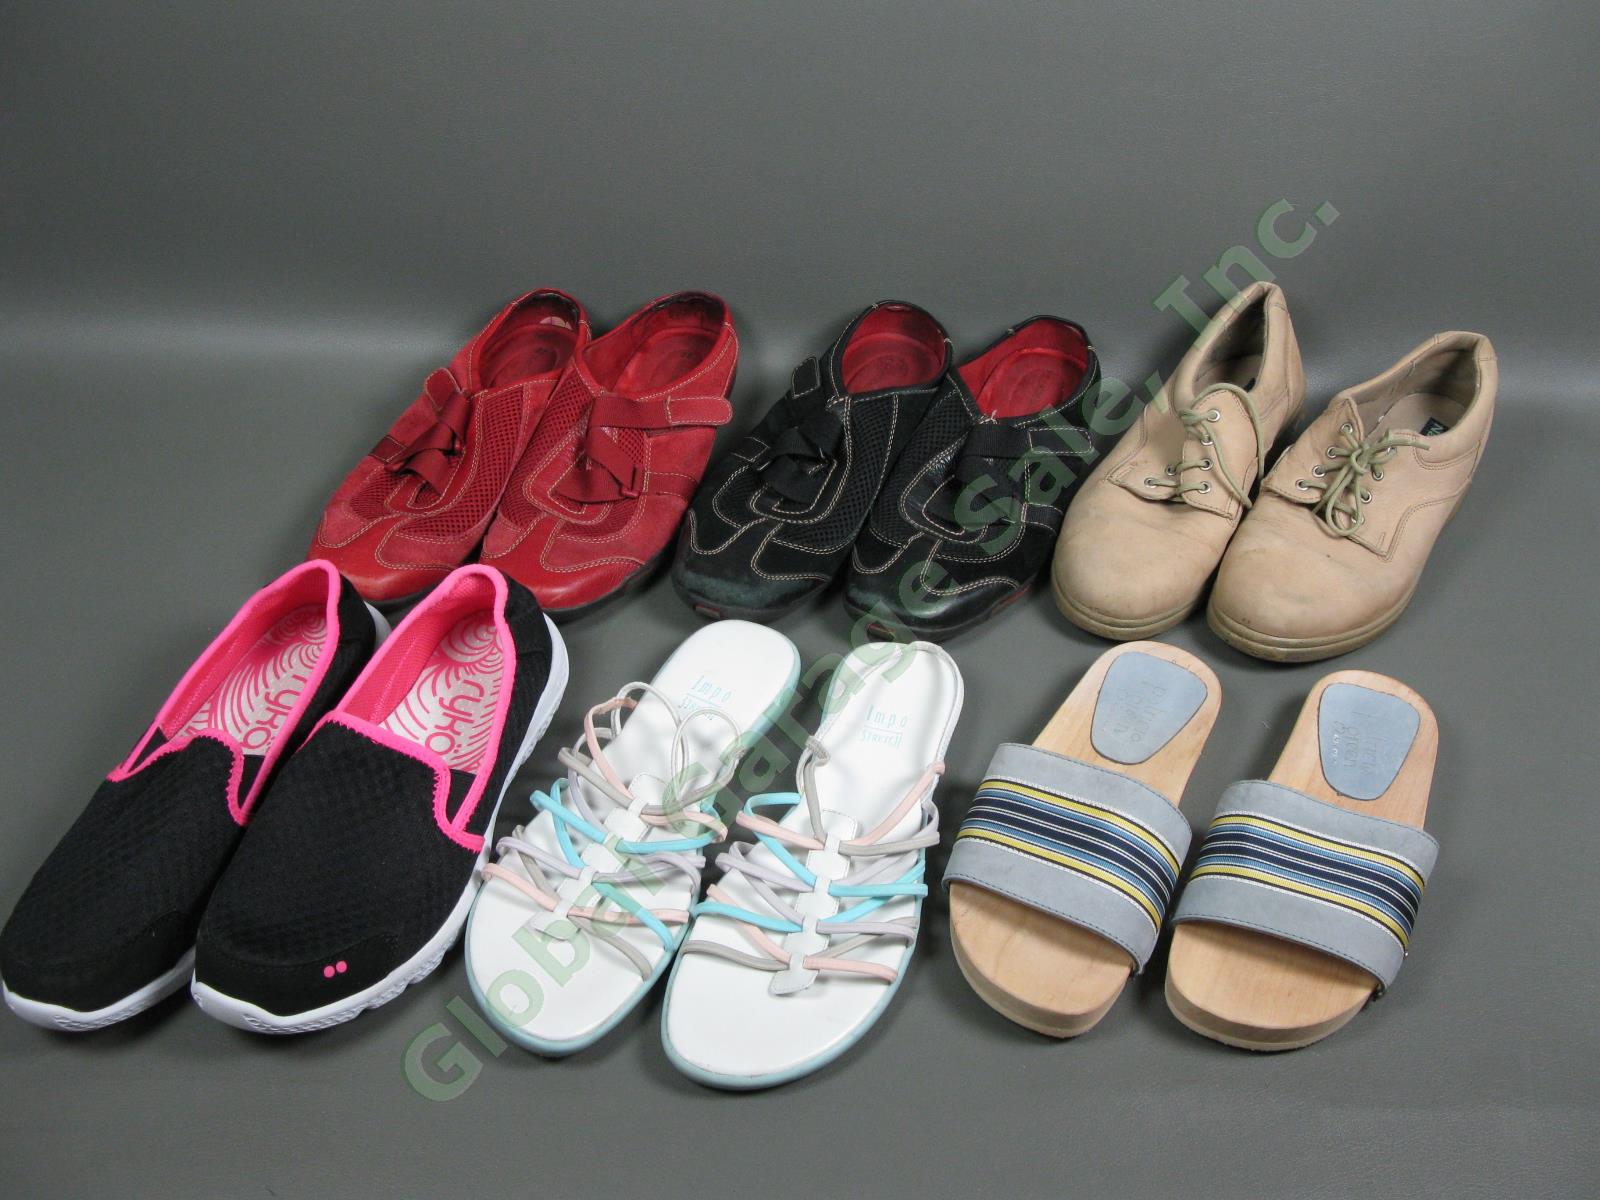 6 Pair Womens Walking Slip-In Sandal Size 8.5M-9M Shoe Lot Naturalizer Ryka Impo